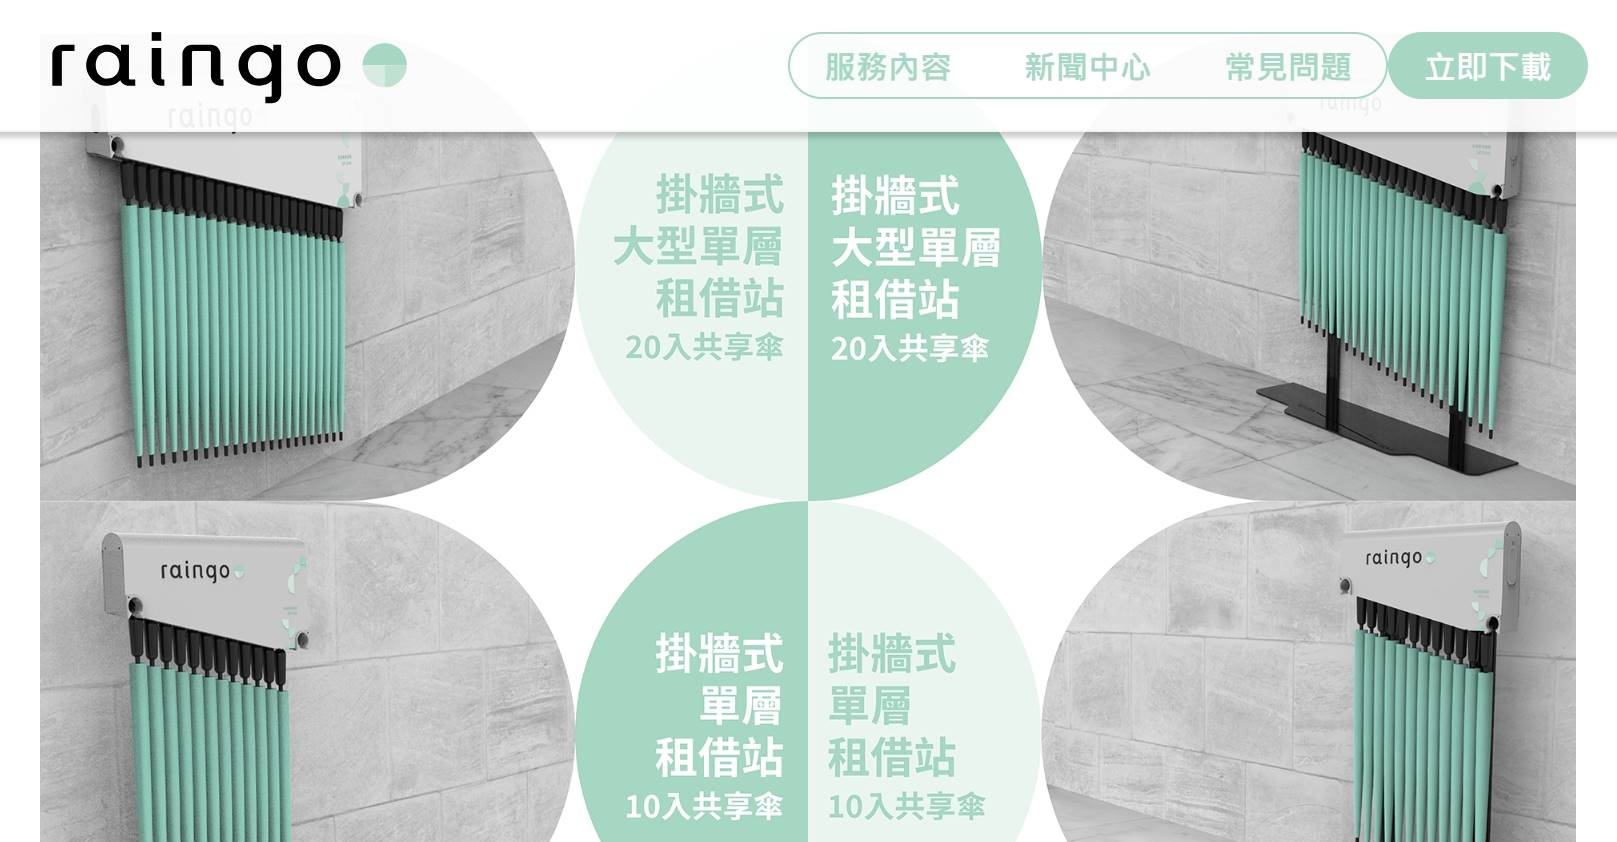 臺北捷運和「raingo」合作推出共享雨傘租借服務